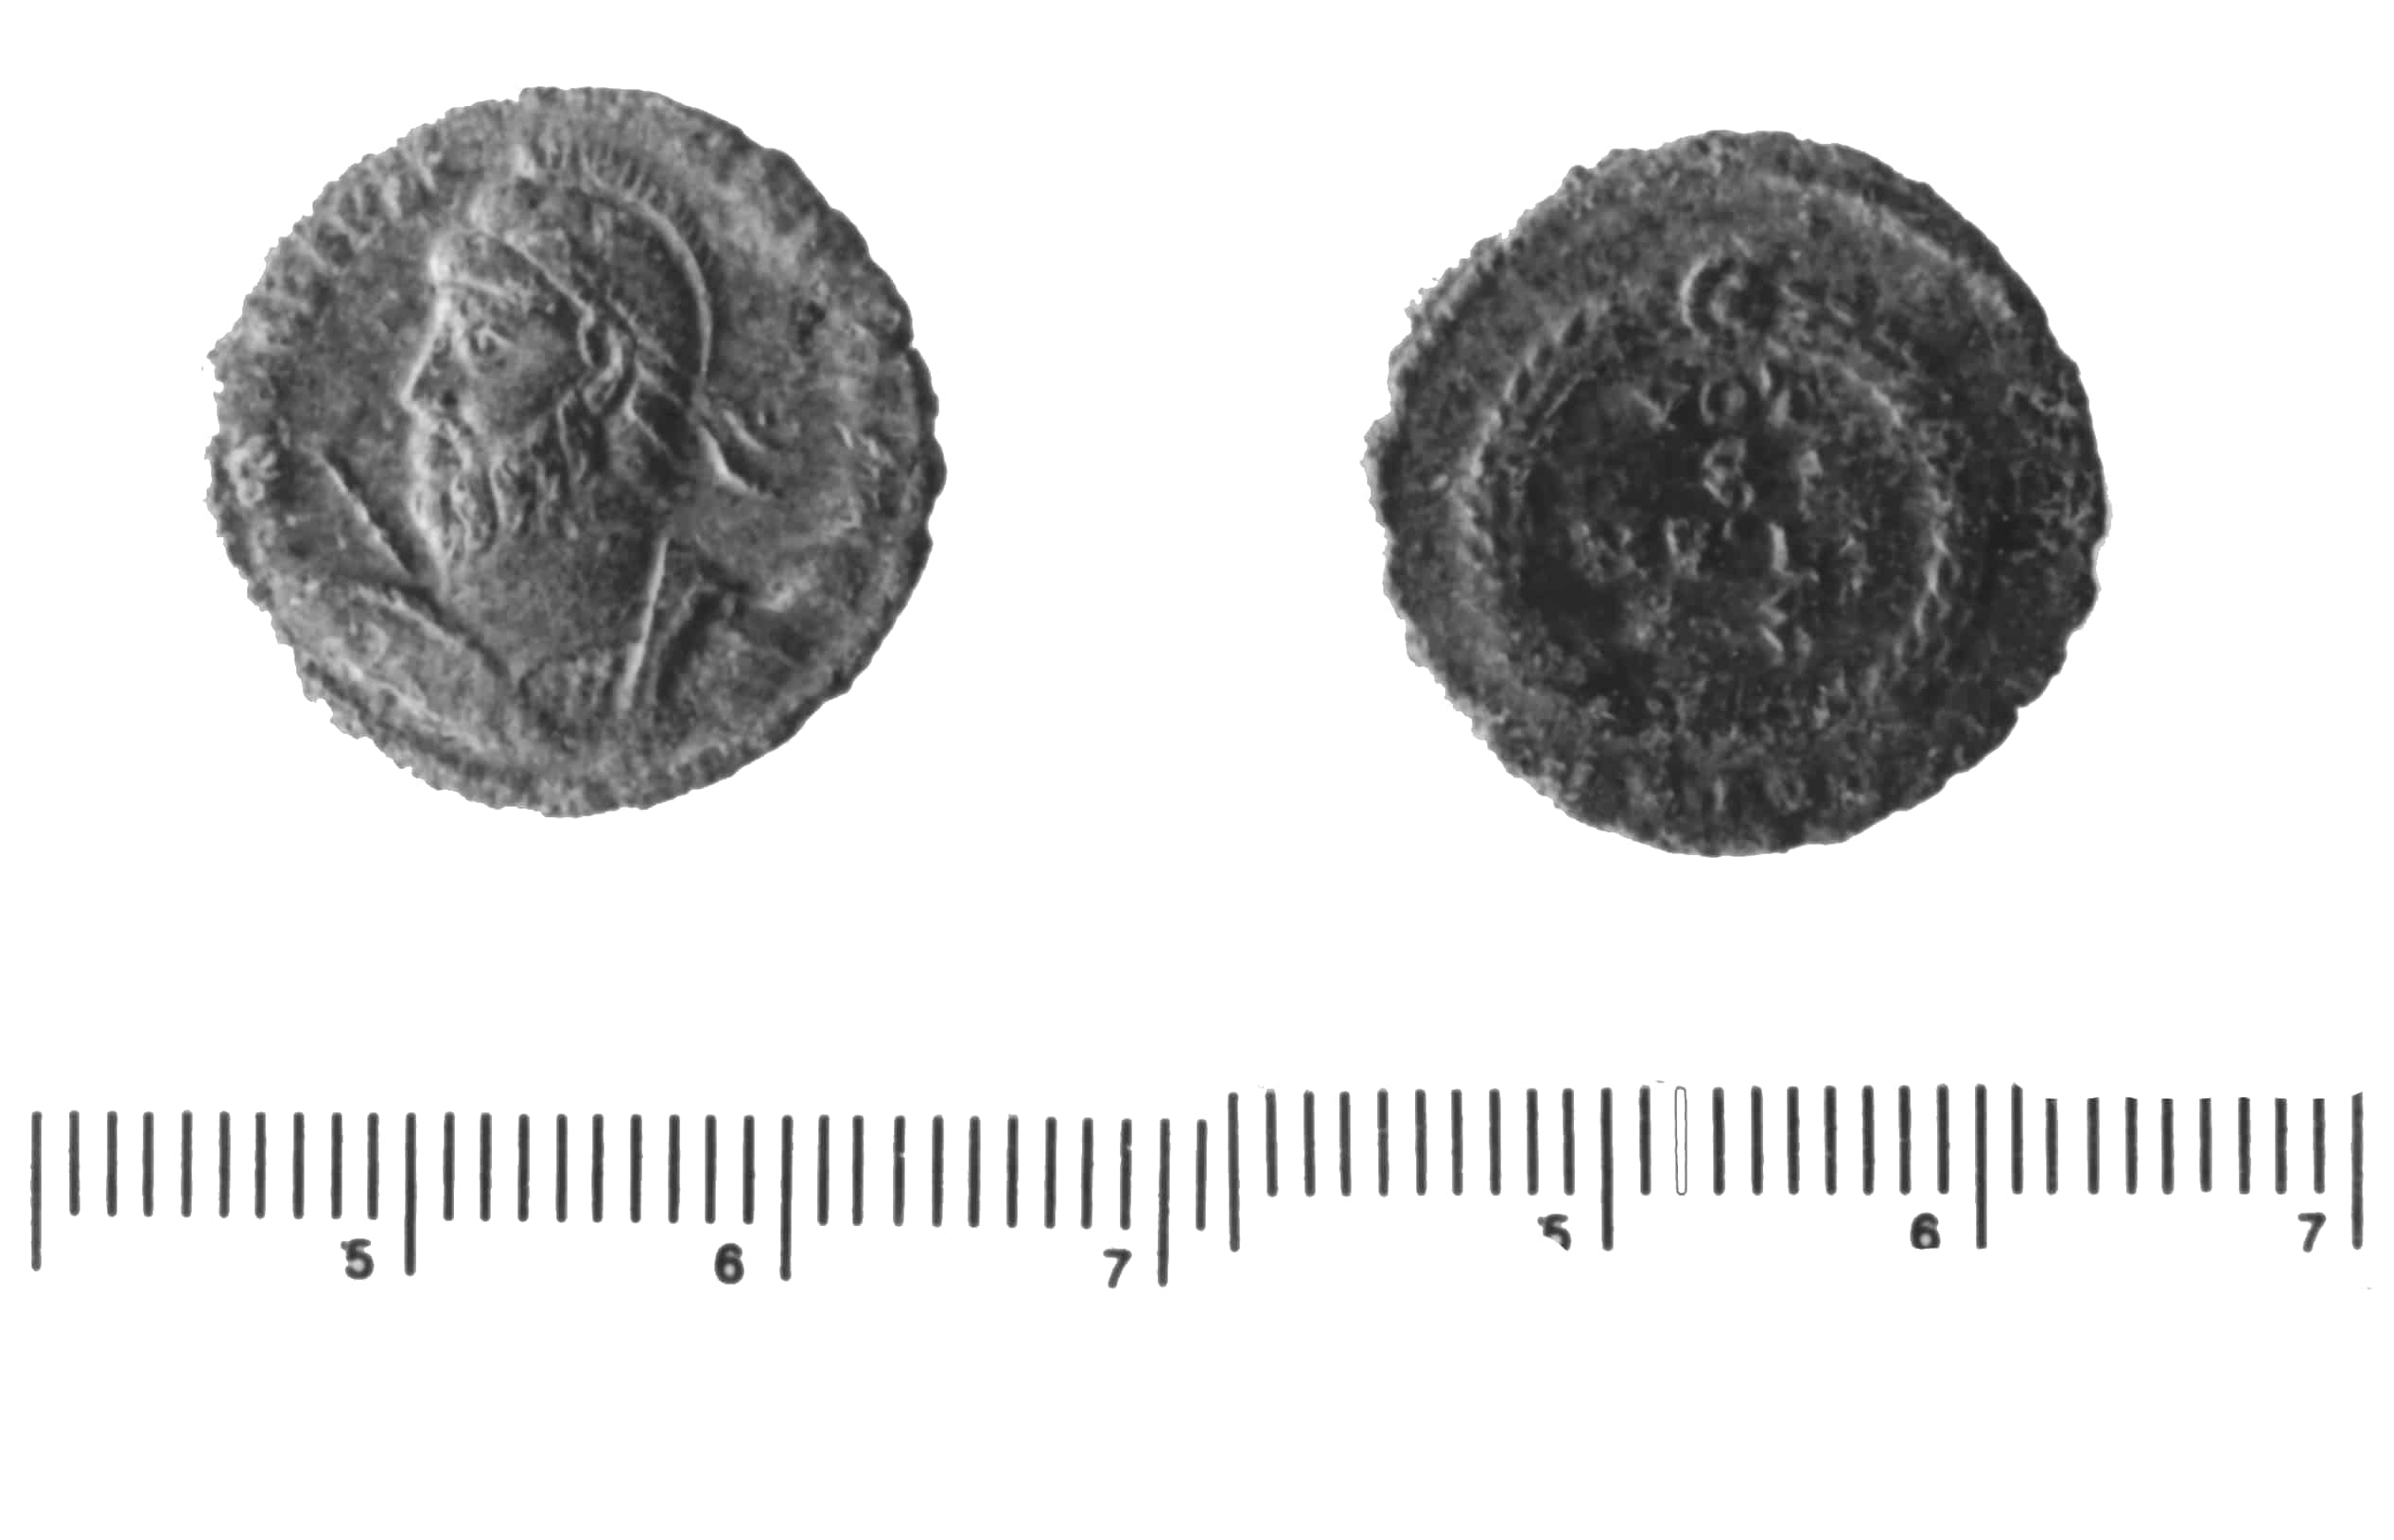 moneta - AE3 (IV)